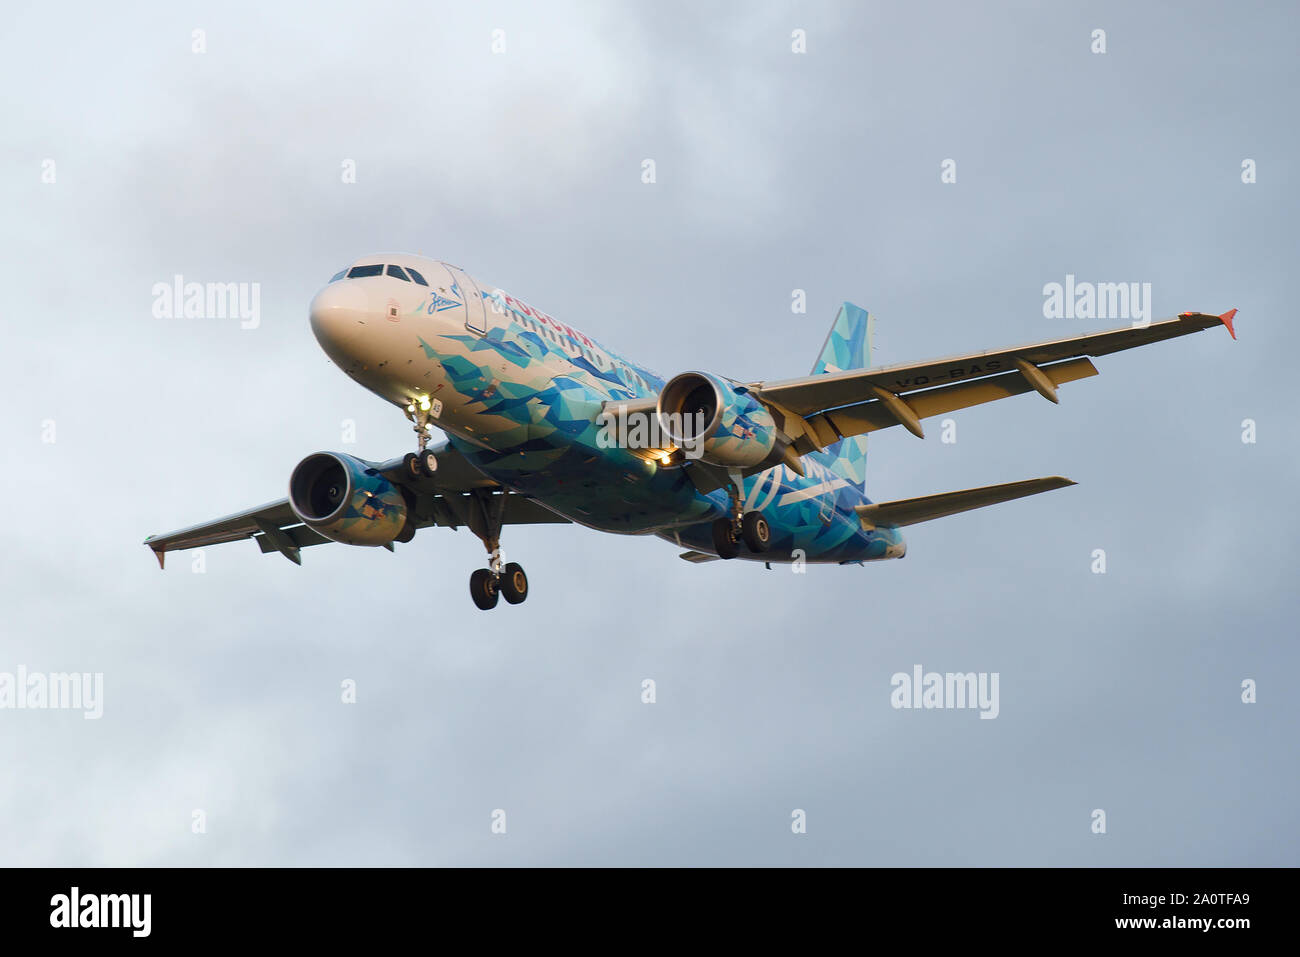 SAINT-Petersburg, Russland - 25. OKTOBER 2018: Airbus A 319-111 (VQ-BAS) der Fluggesellschaft Rossija in der Farbgebung der Zenit Football Club auf einem Glide pat Stockfoto